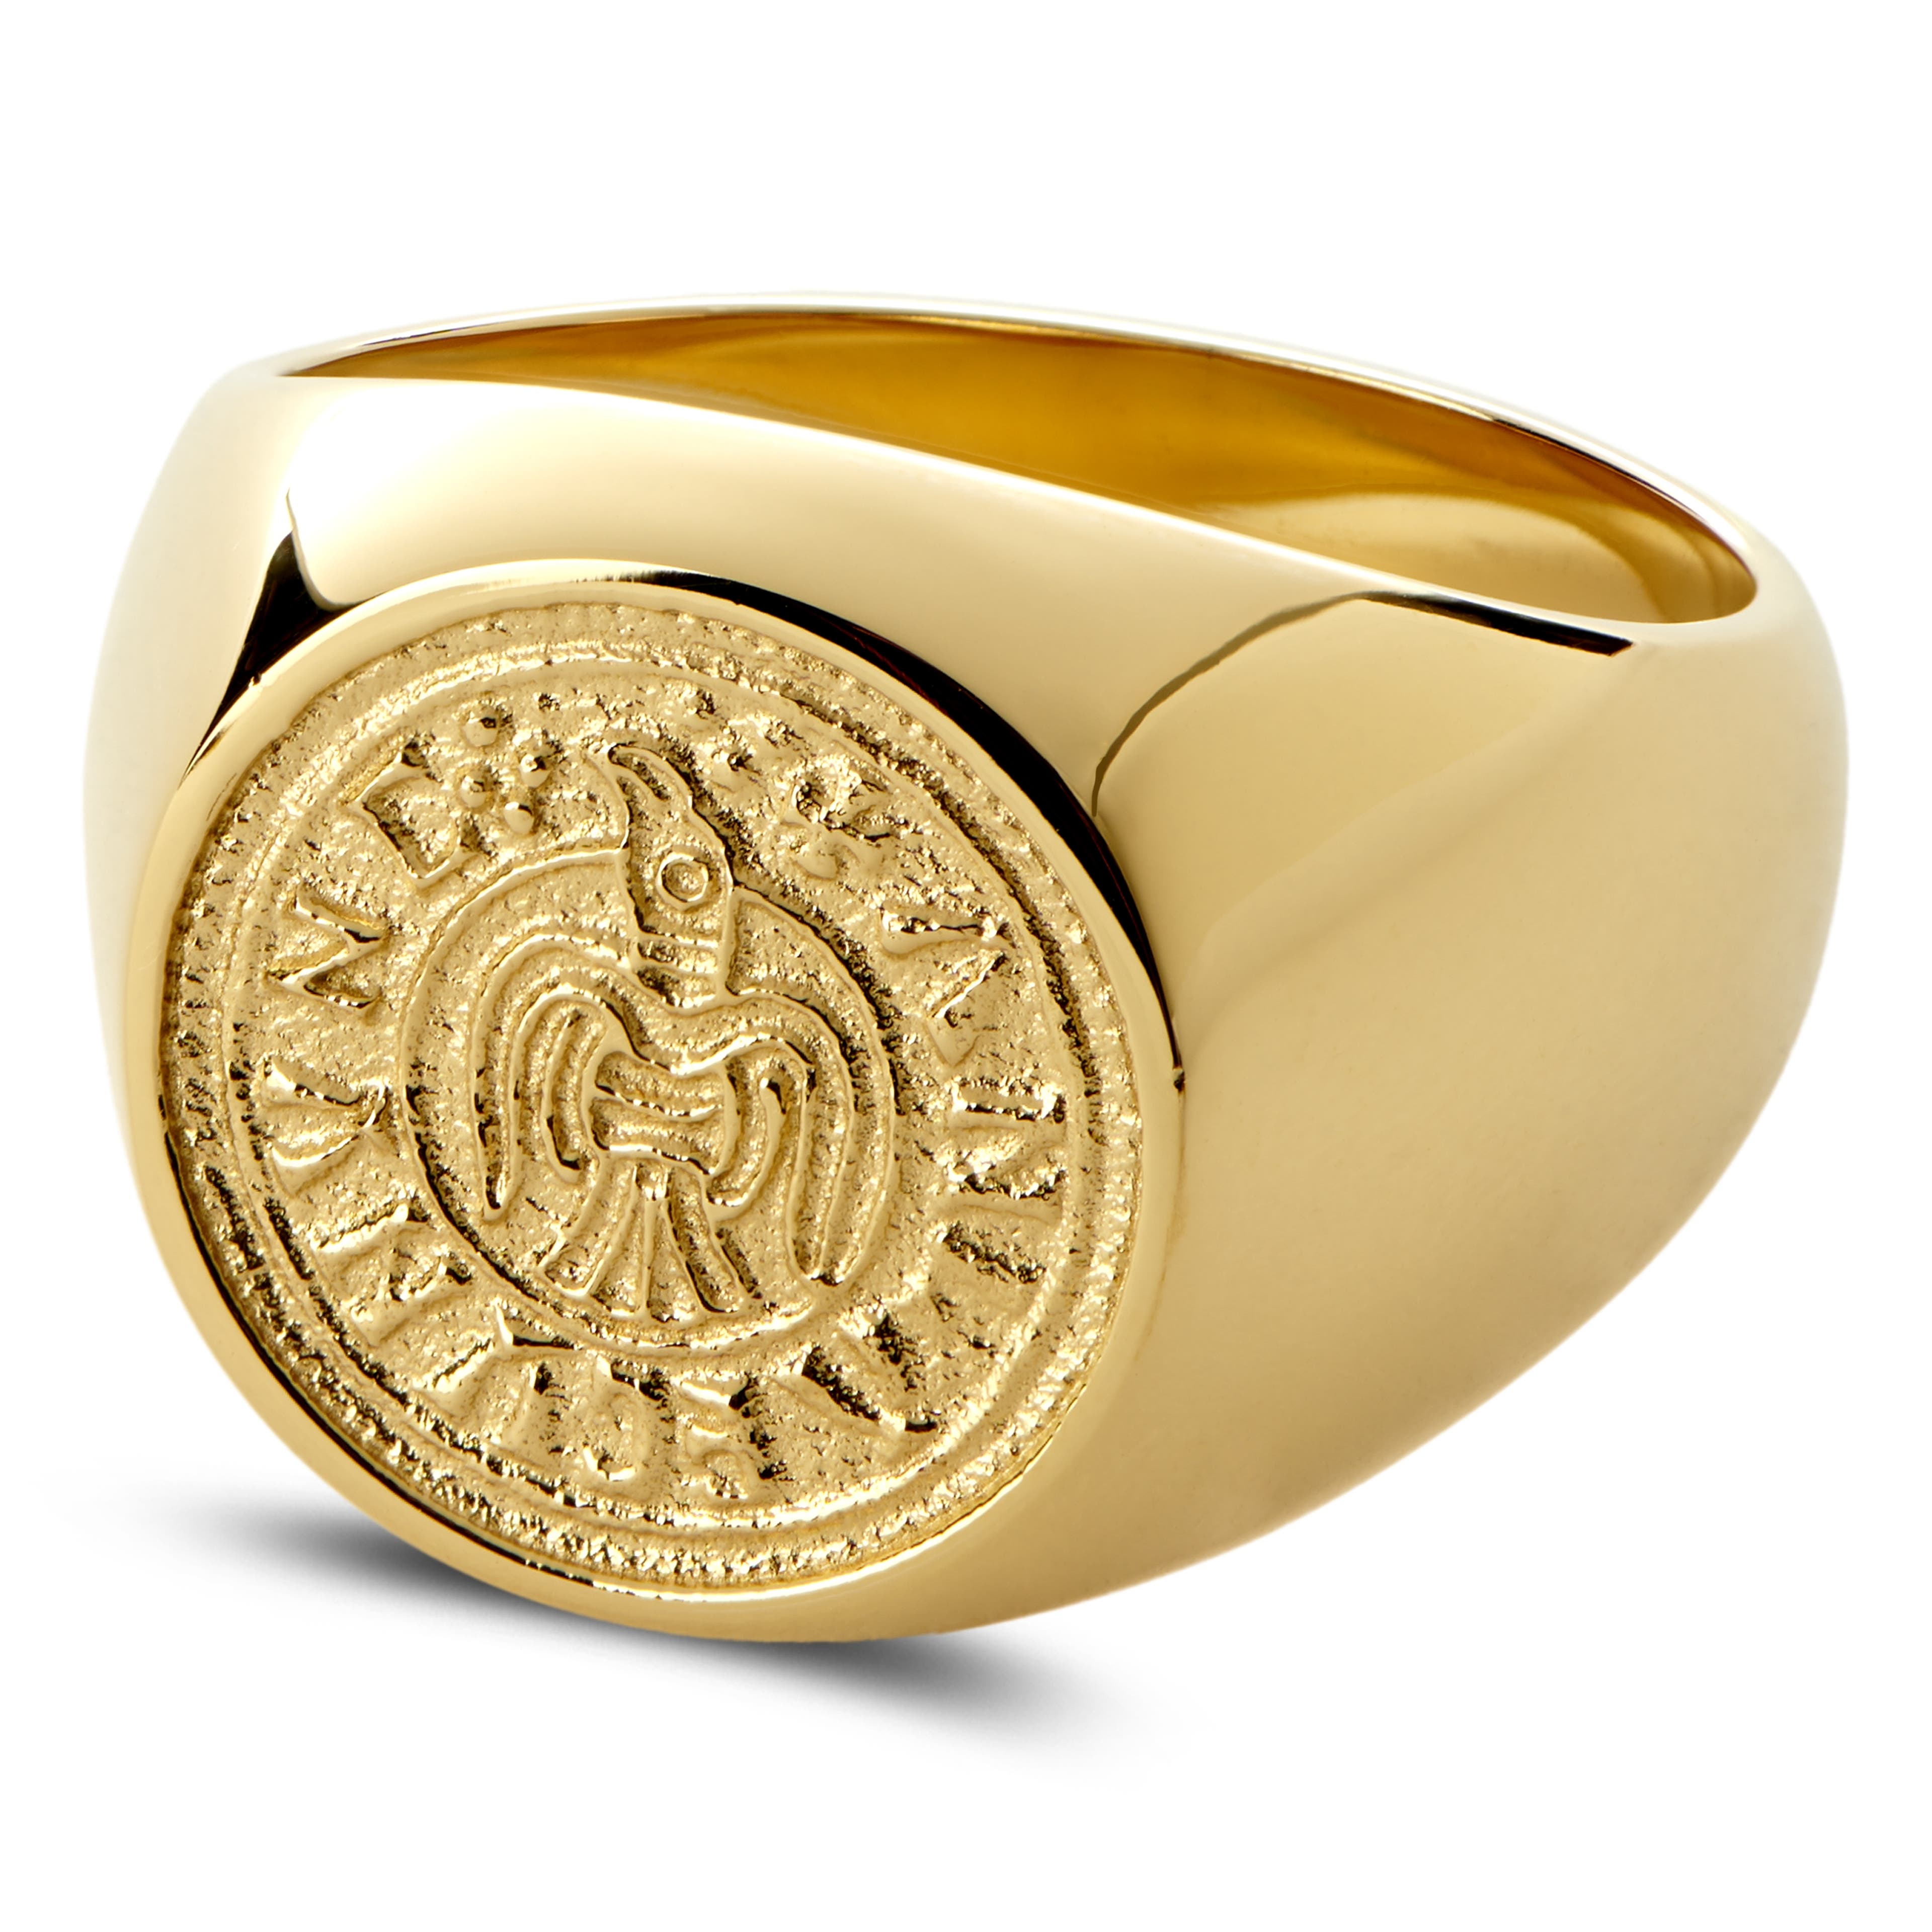 Laif aranyszínű pecsétgyűrű